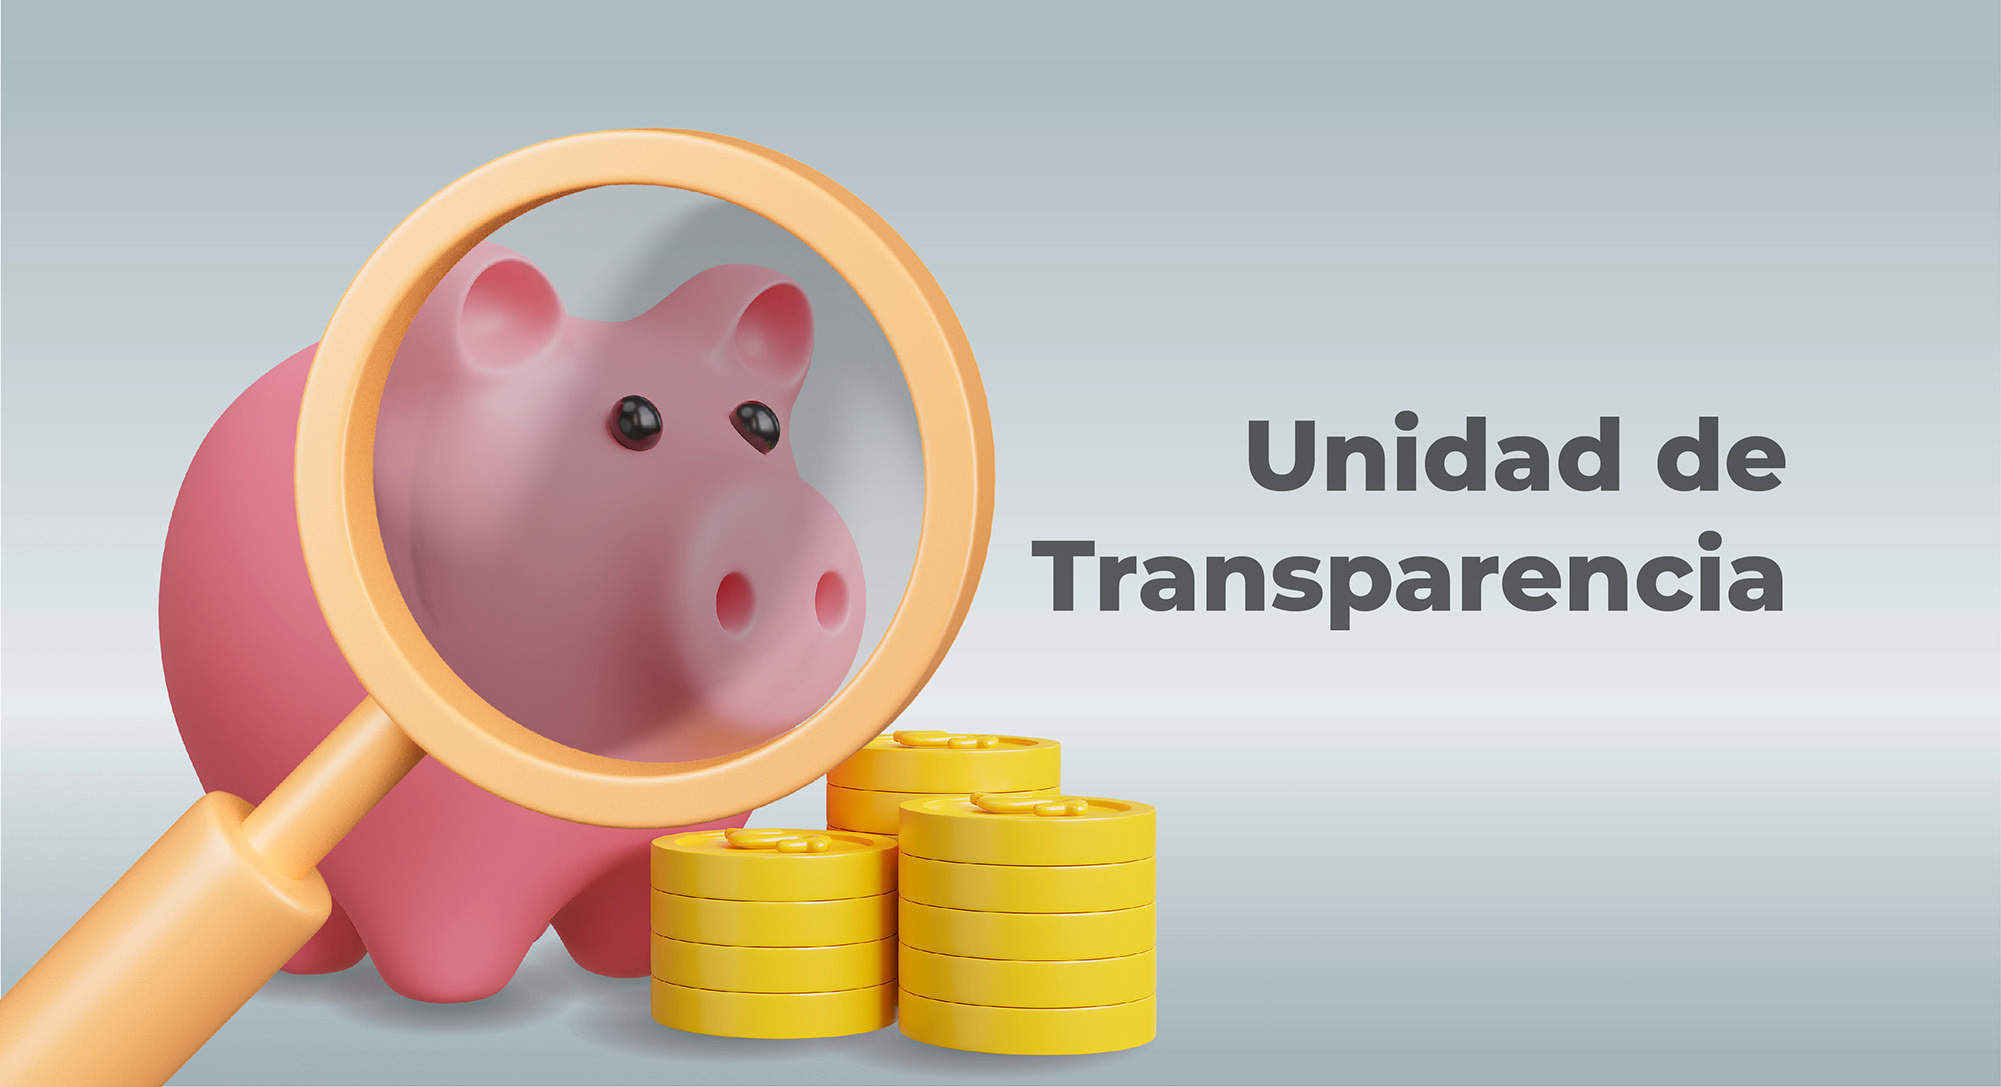 Unidad de transparencia